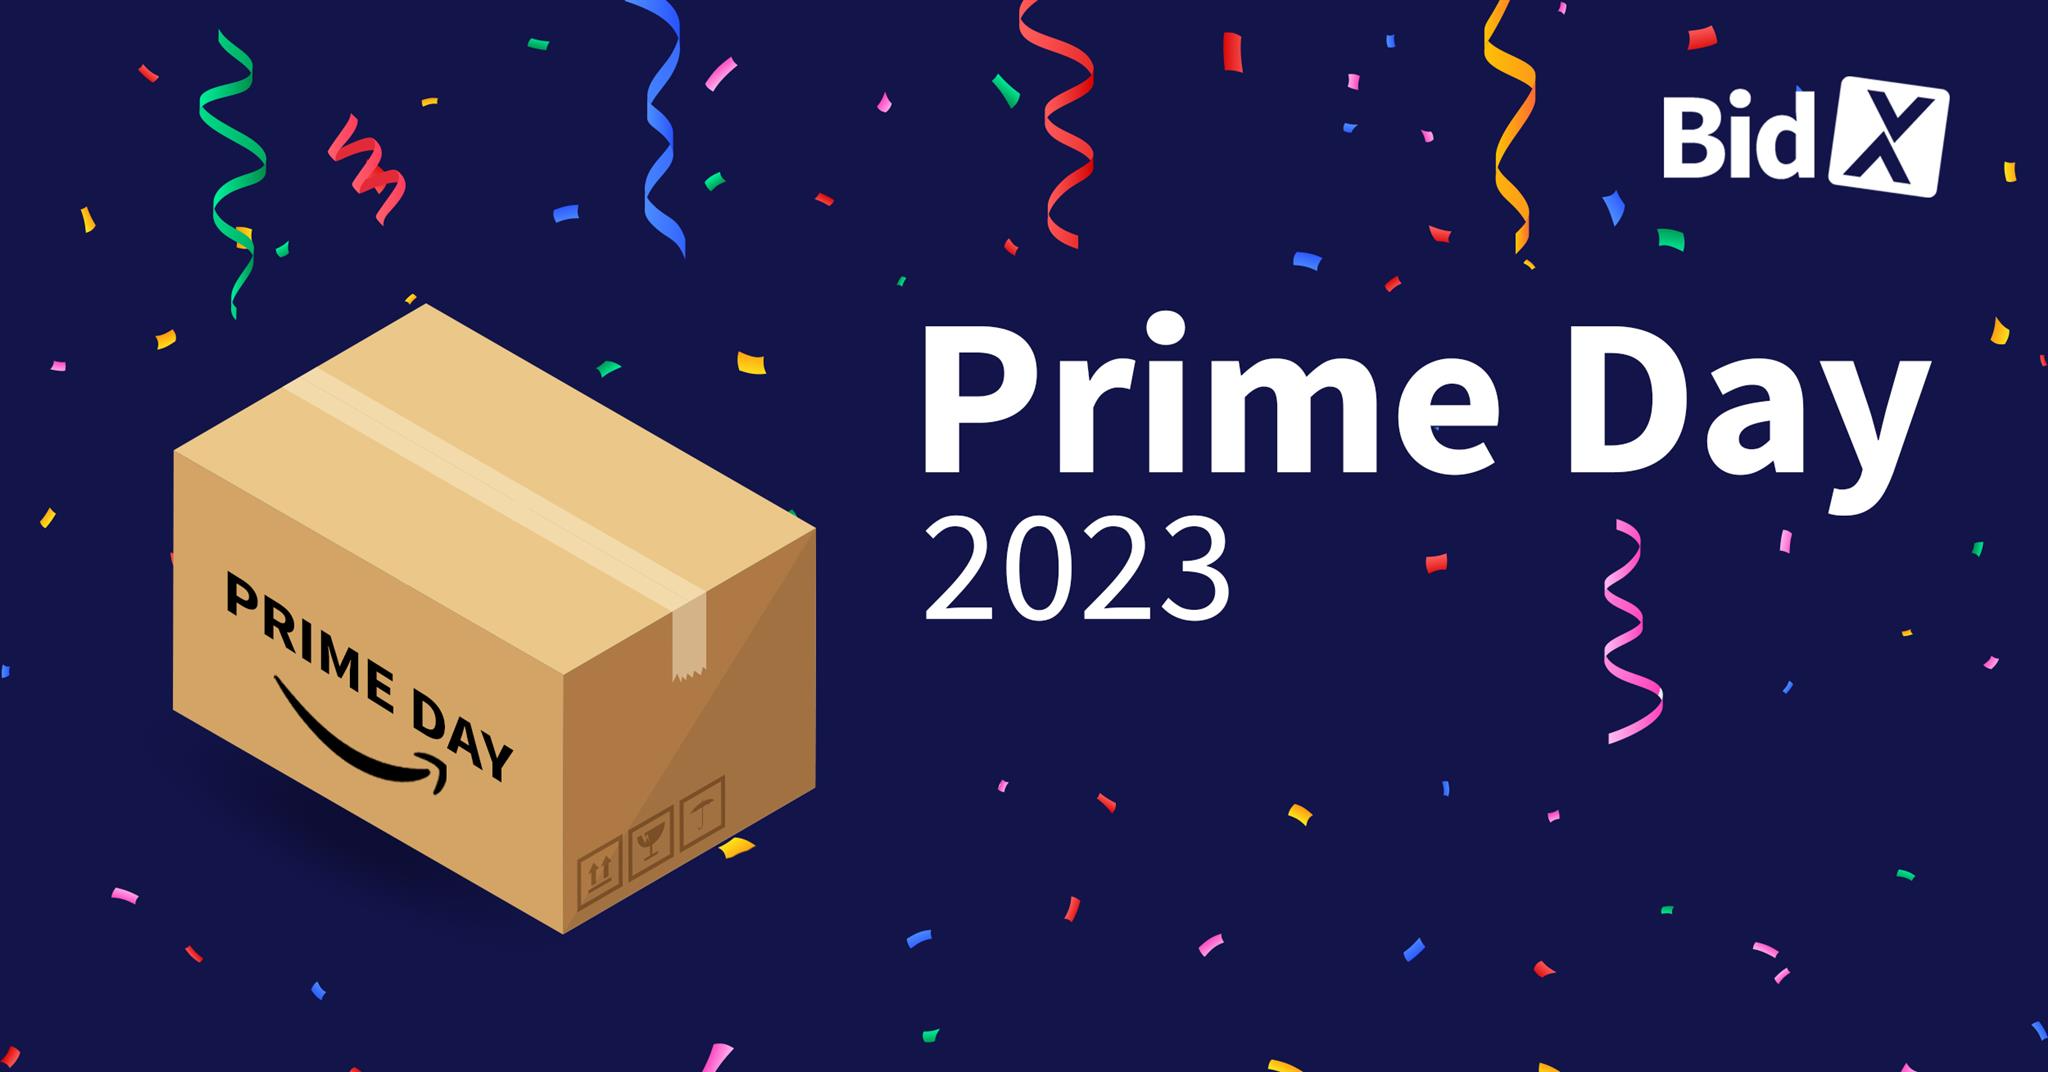 Prime Day 2023